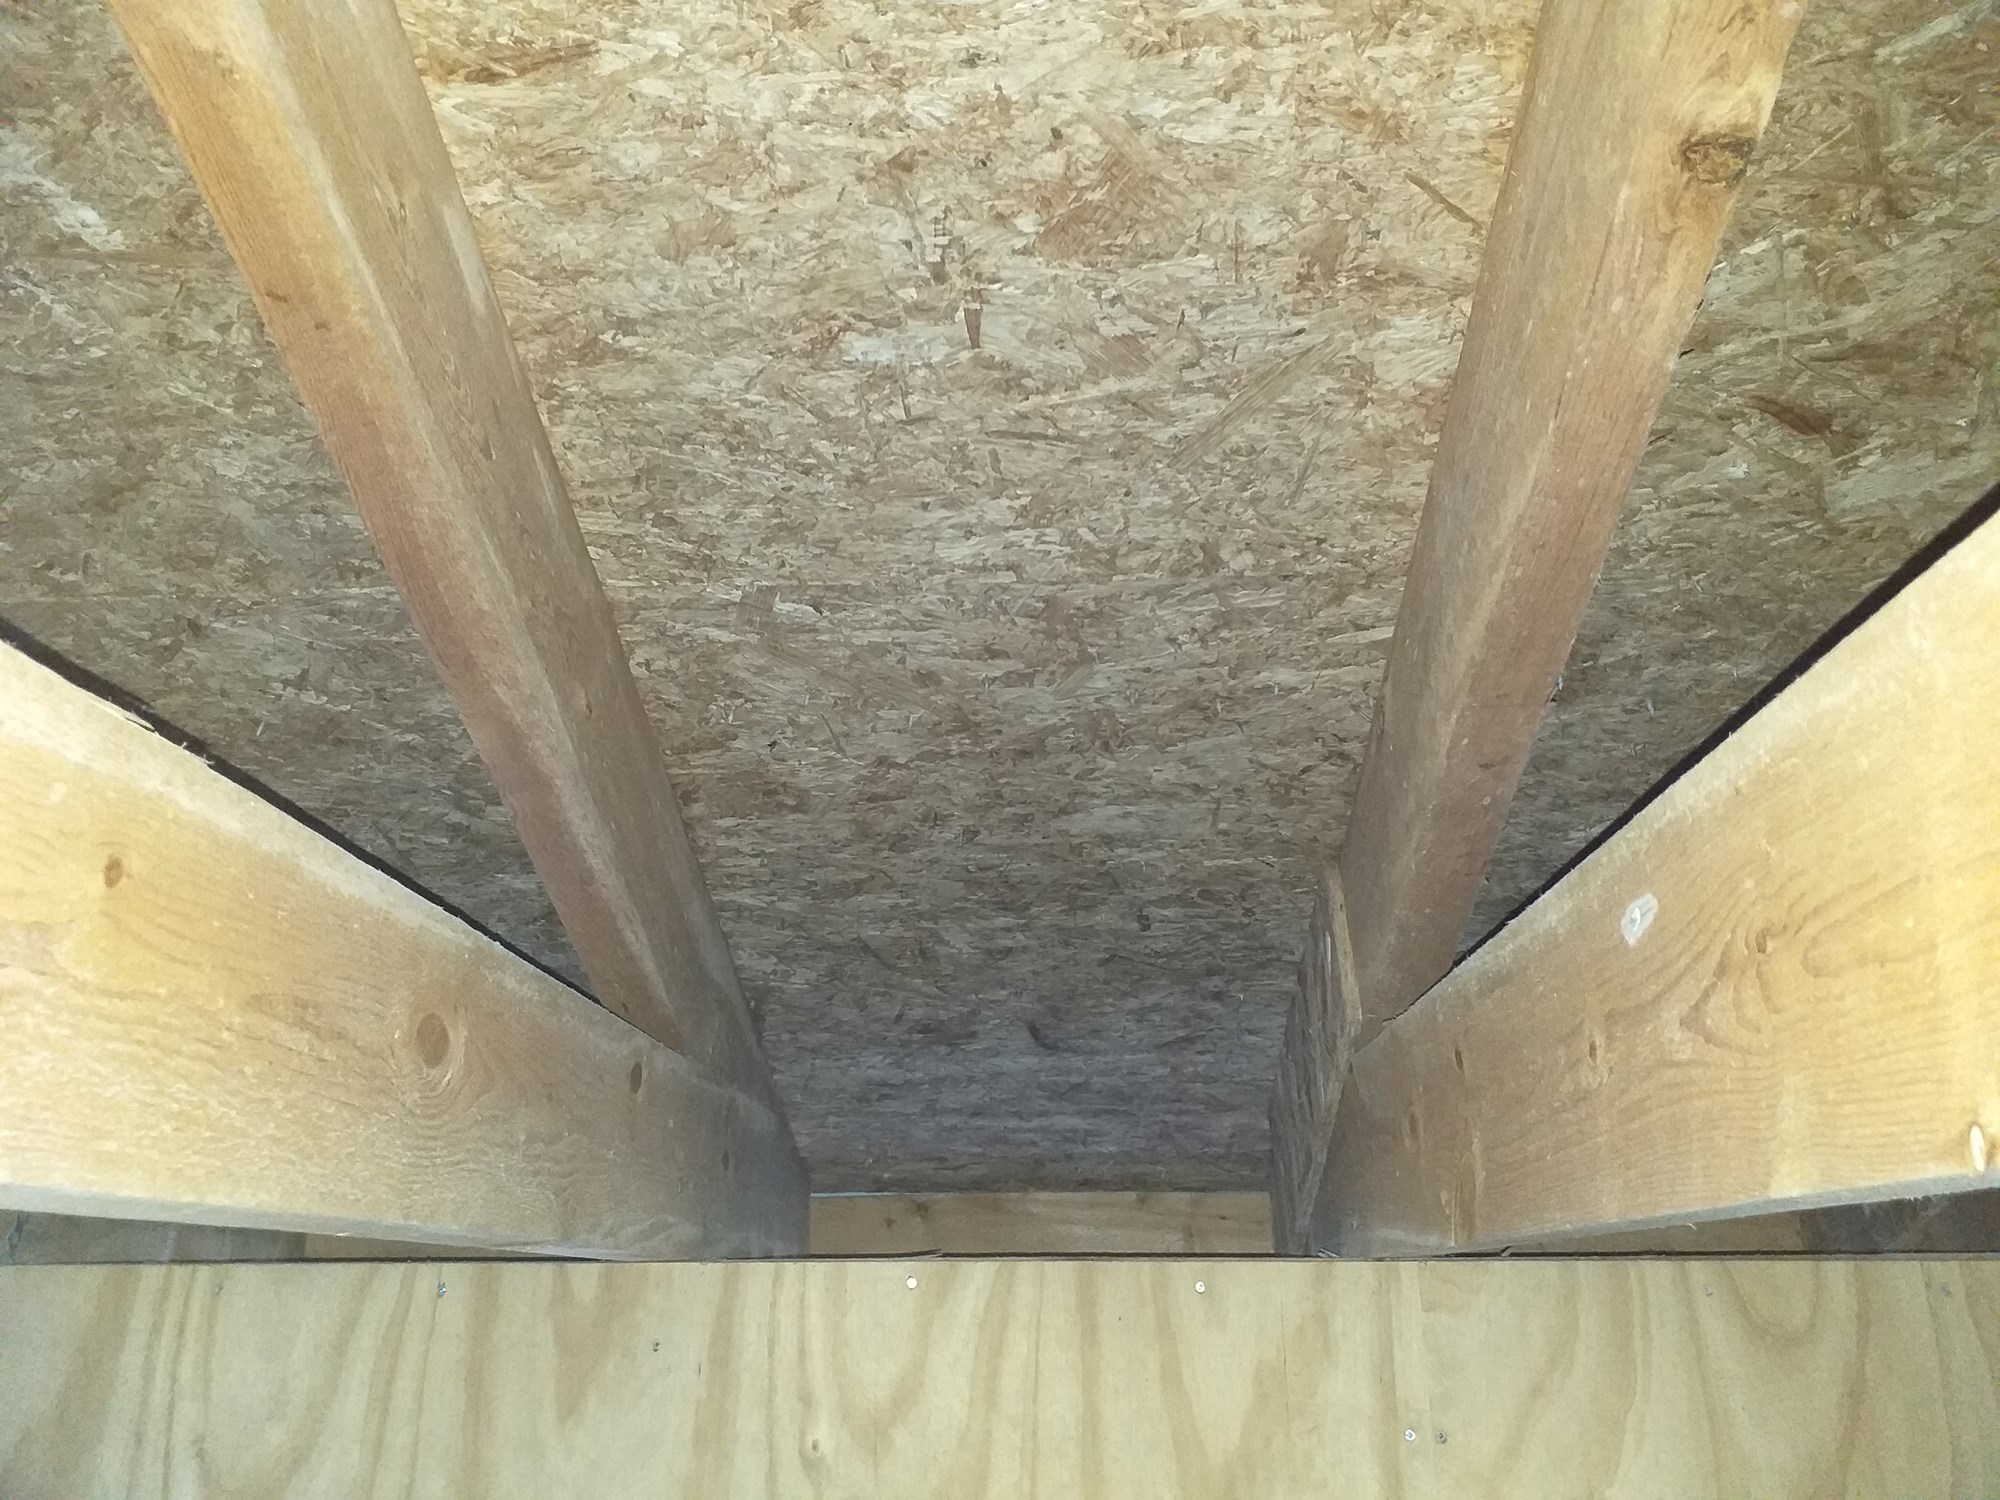 Isolere mellom takstoler og skru opp takplater i garasje - 20201010_150407.jpg - Kenneth83